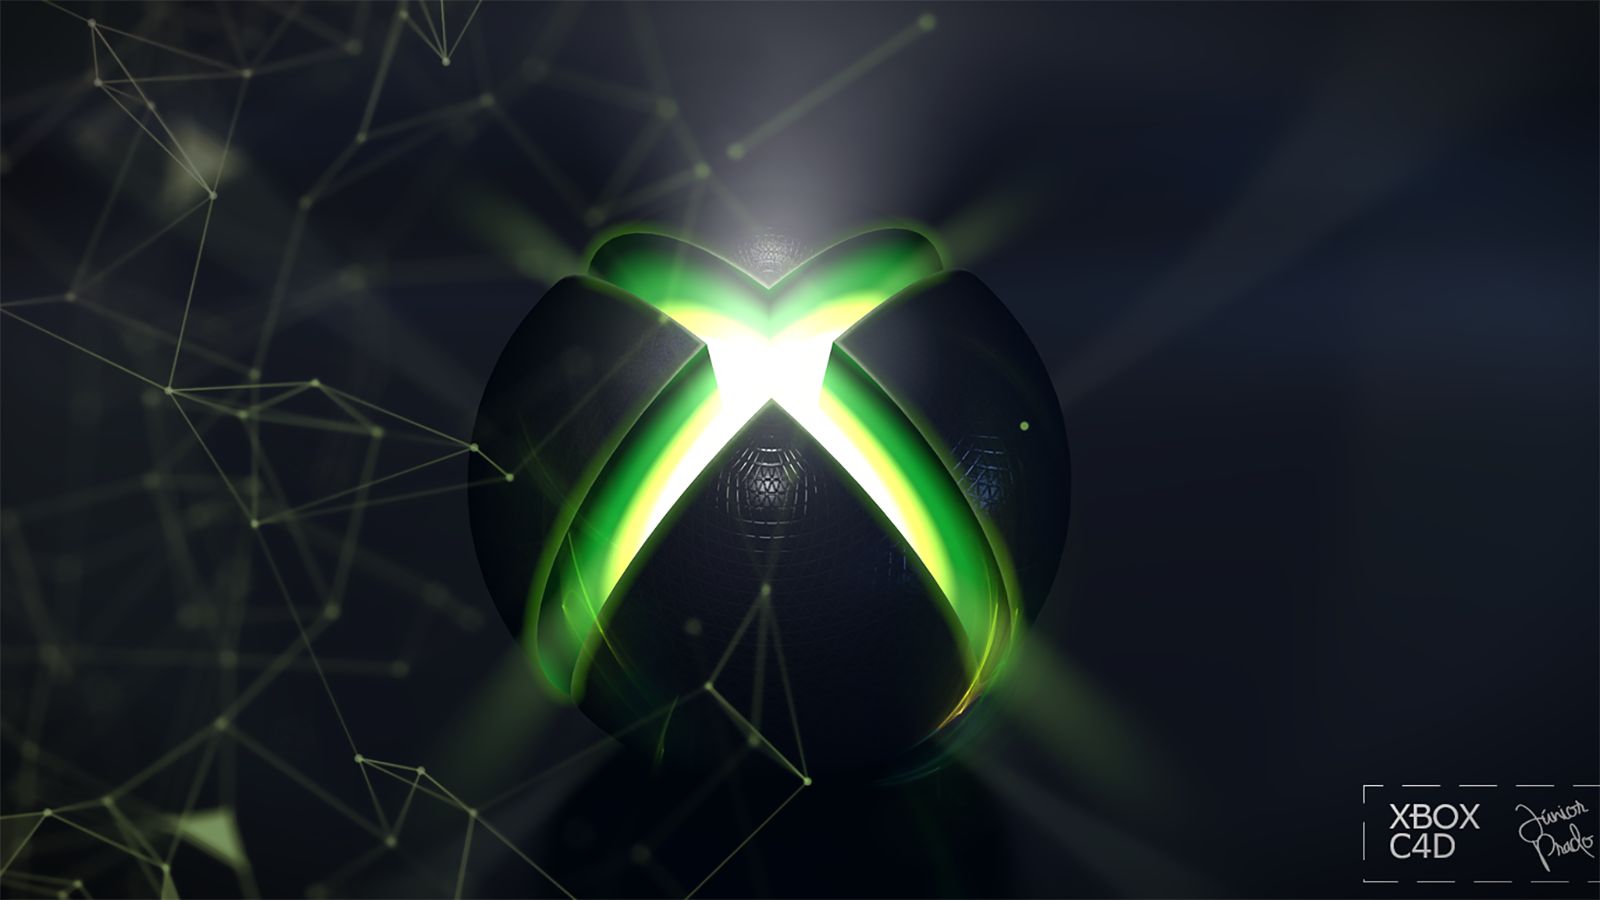 Un nouveau fond d'écran Xbox dynamique est disponible avec